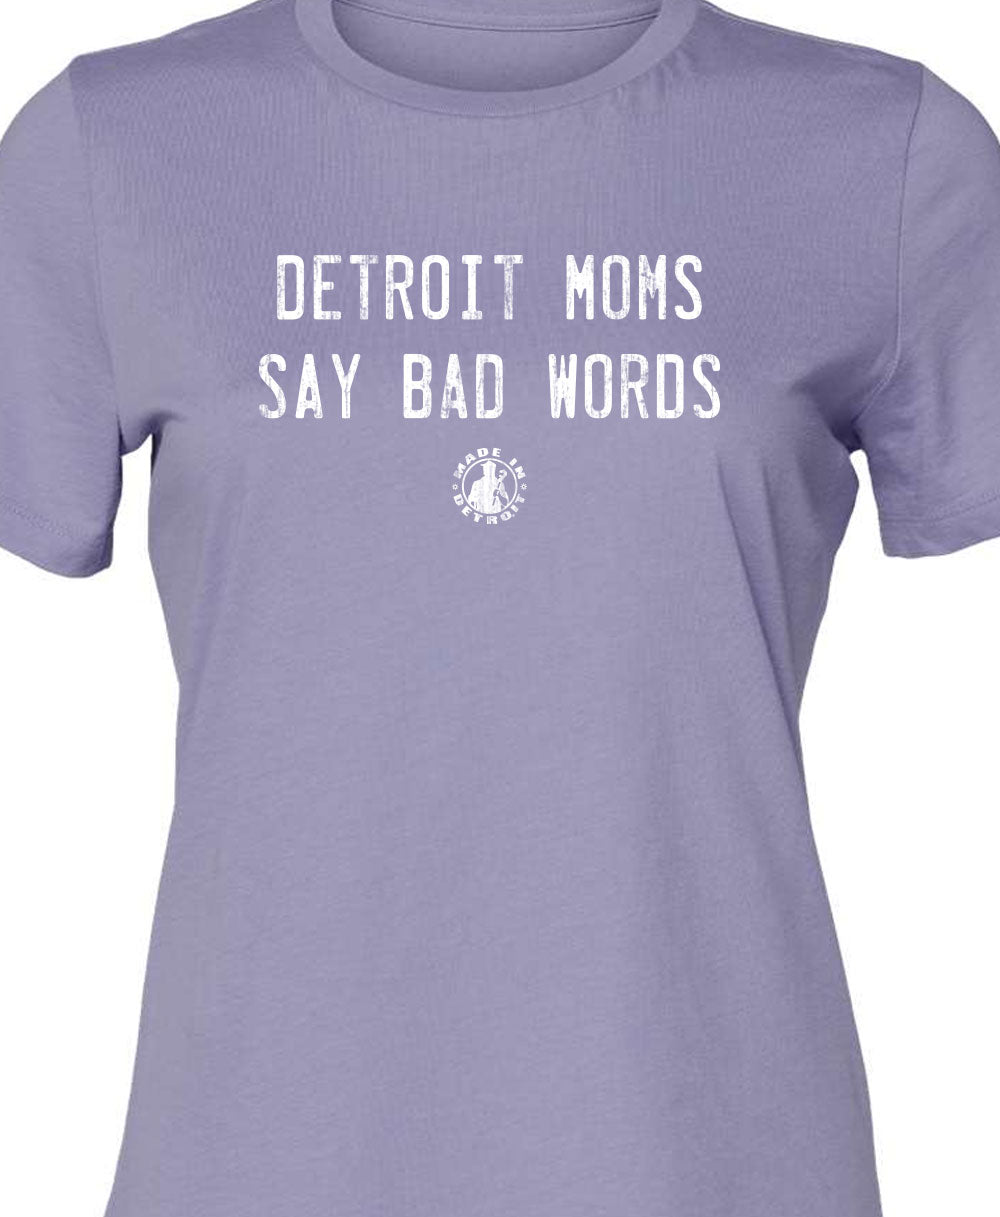 Detroit Moms Cotton Crew